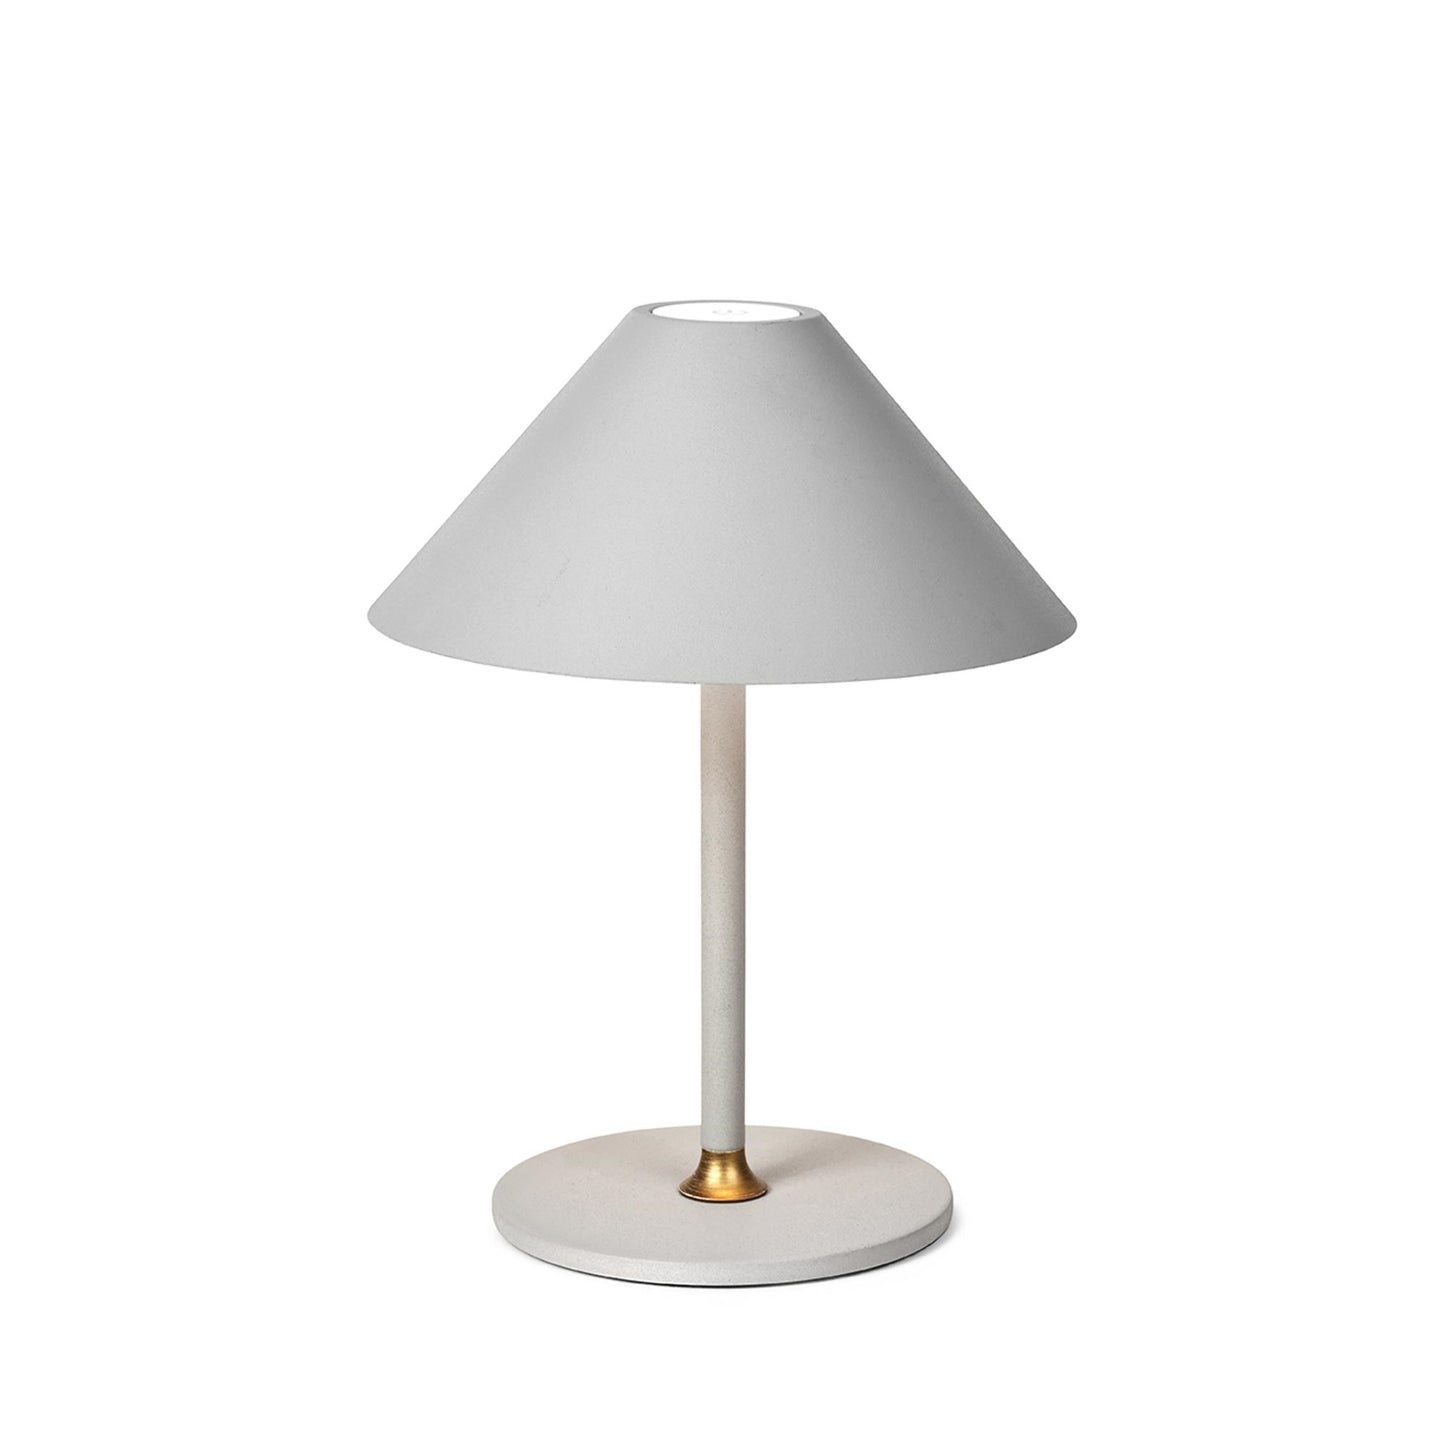 Cozy Portable Lamp by Halo Design #Warm Grey